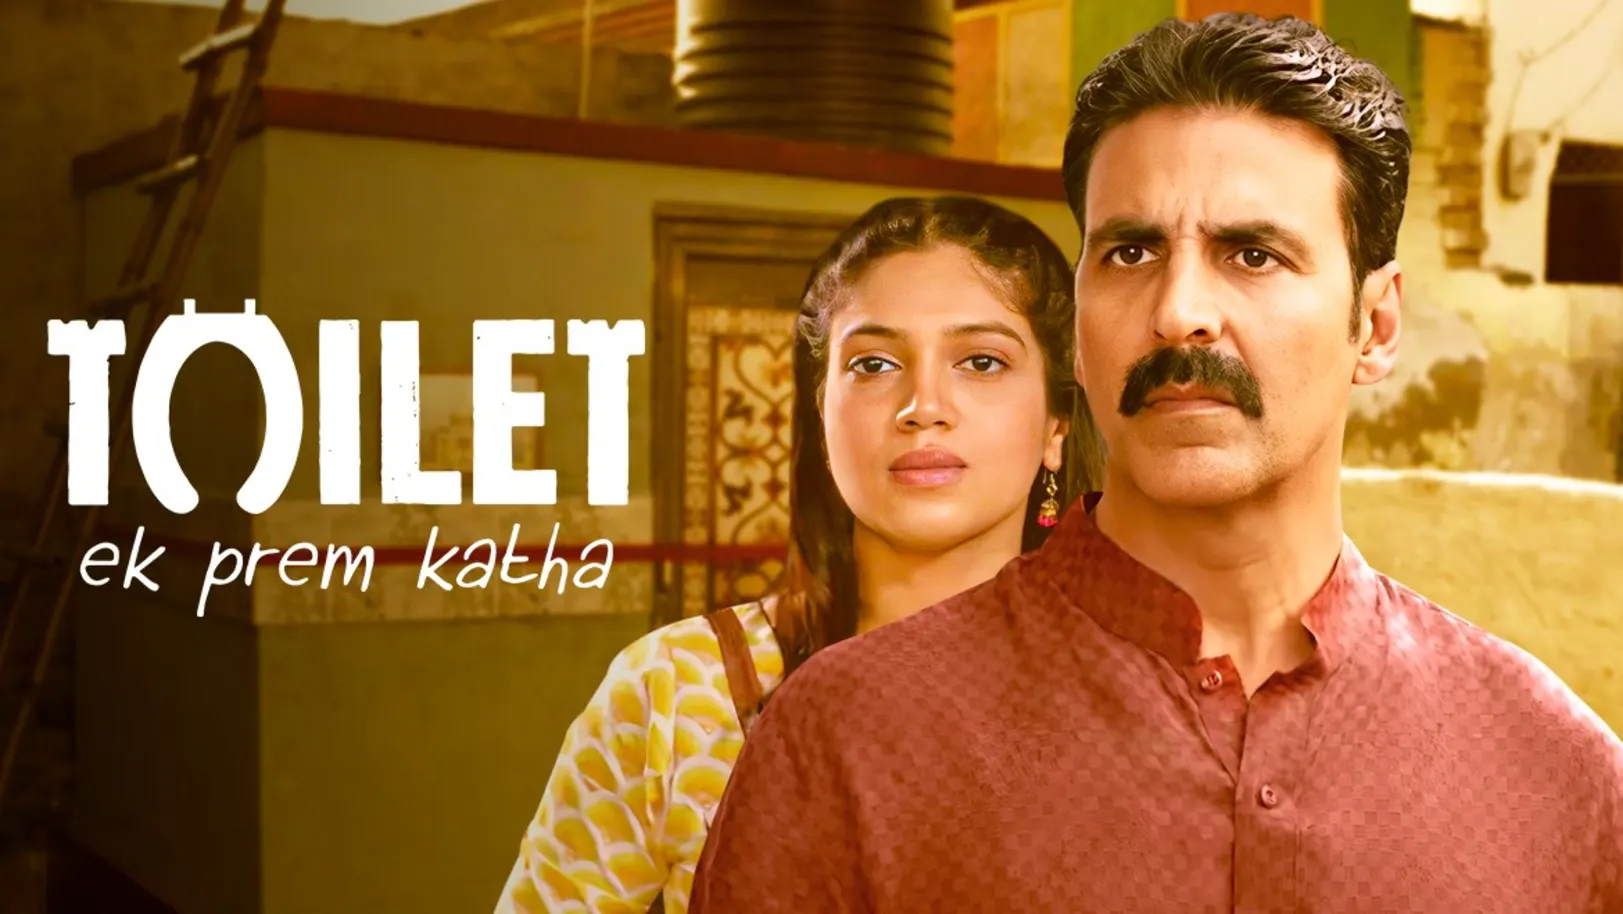 Toilet: Ek Prem Katha Movie